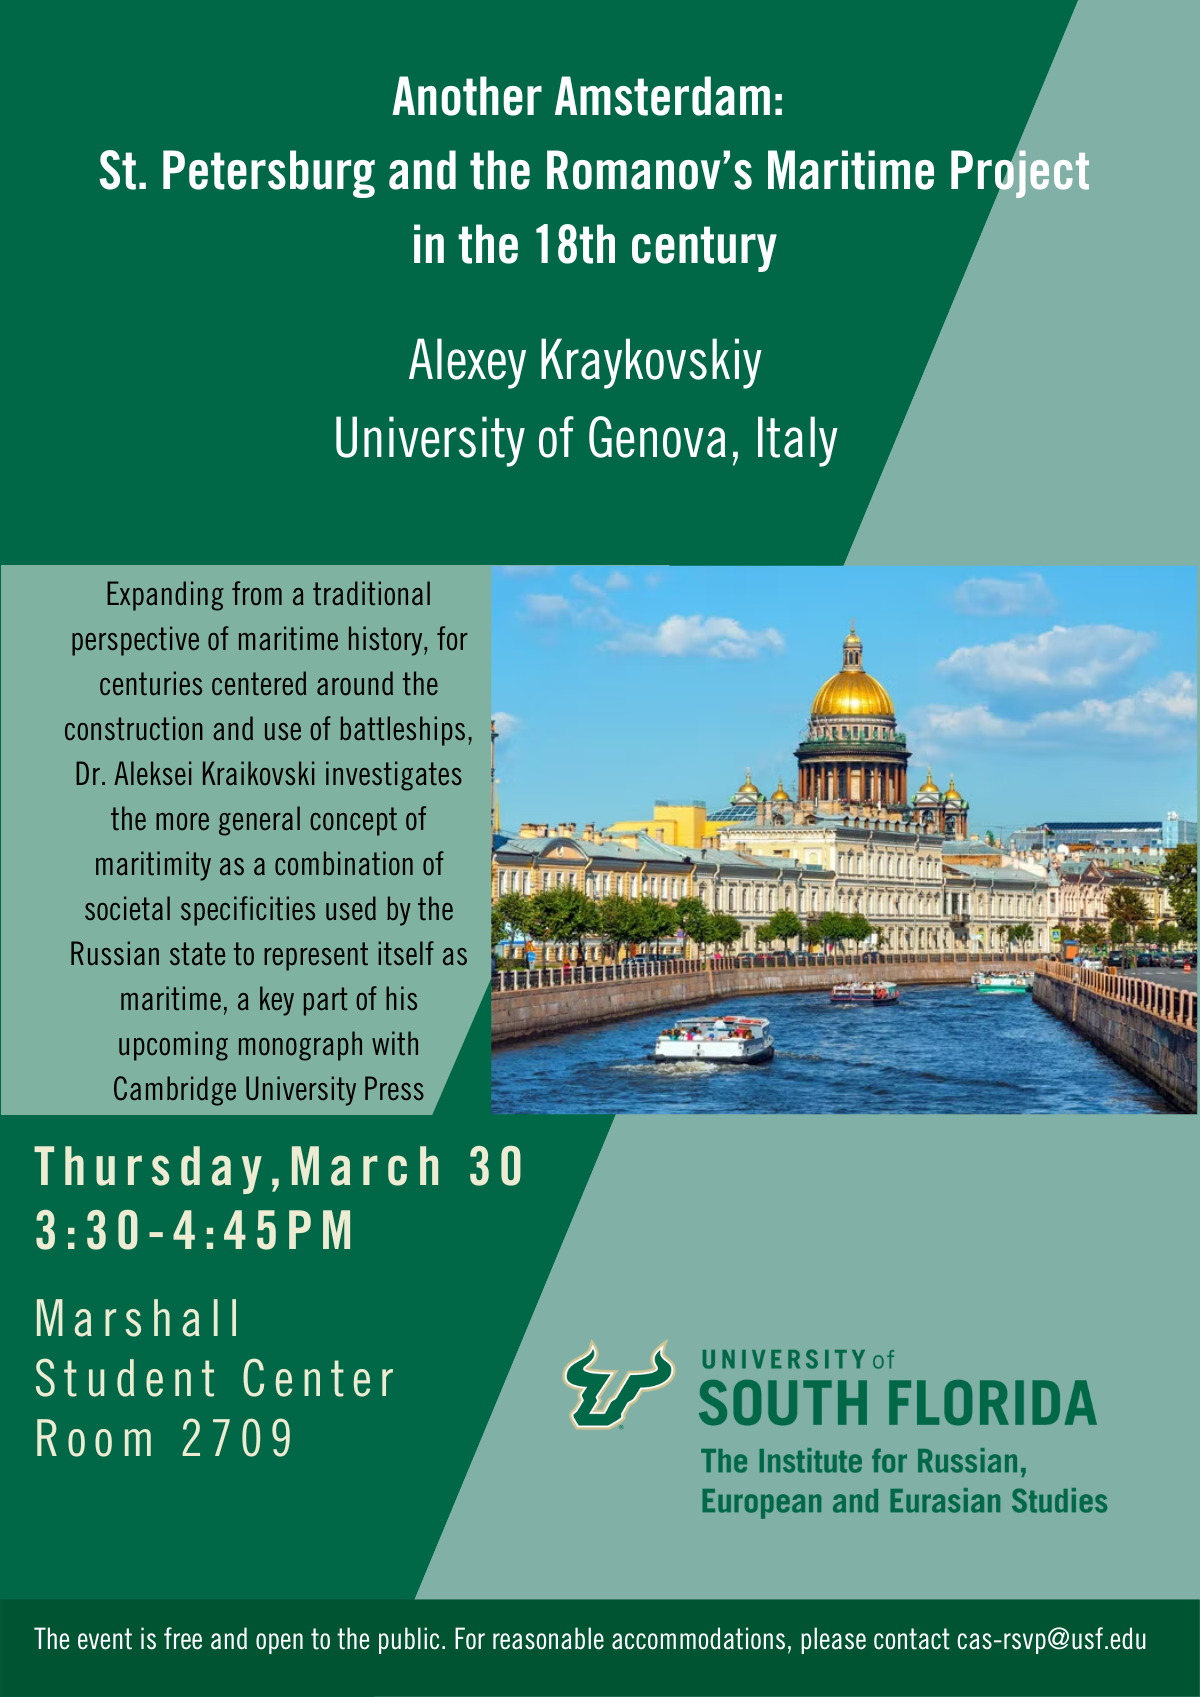 Alexey Kraykovskiy event flyer